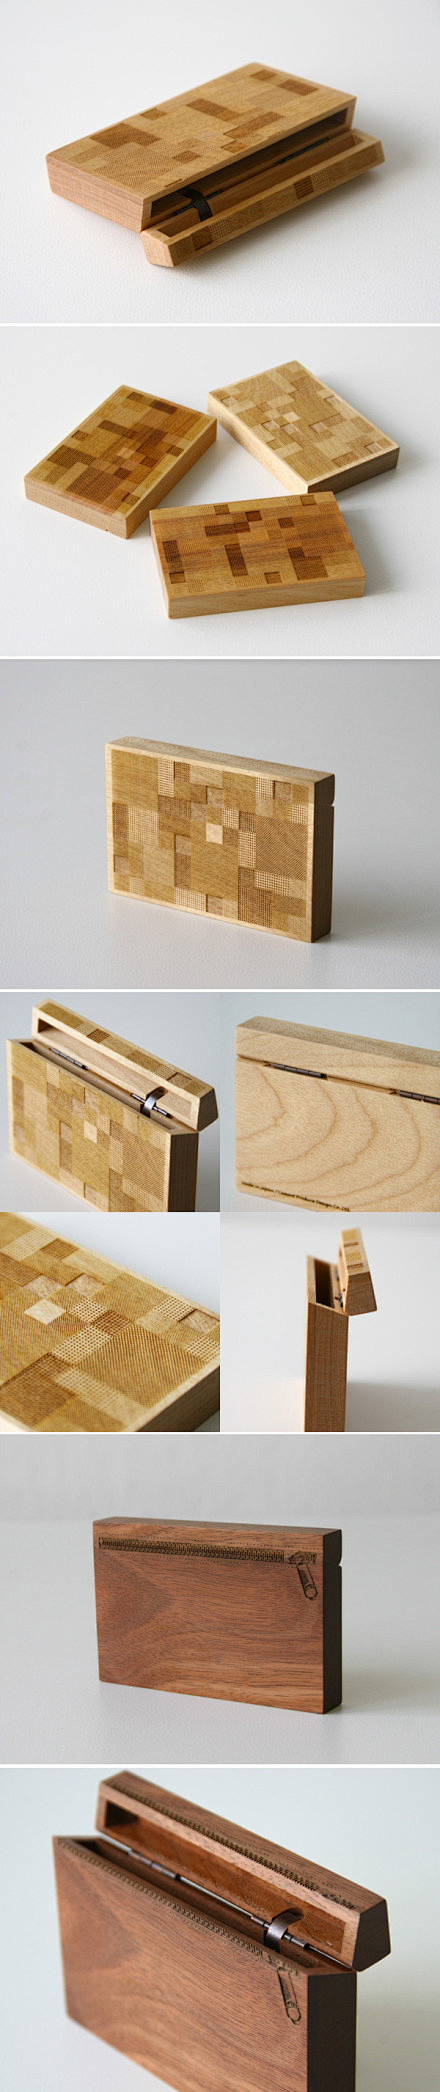 木头盒子→木质生活